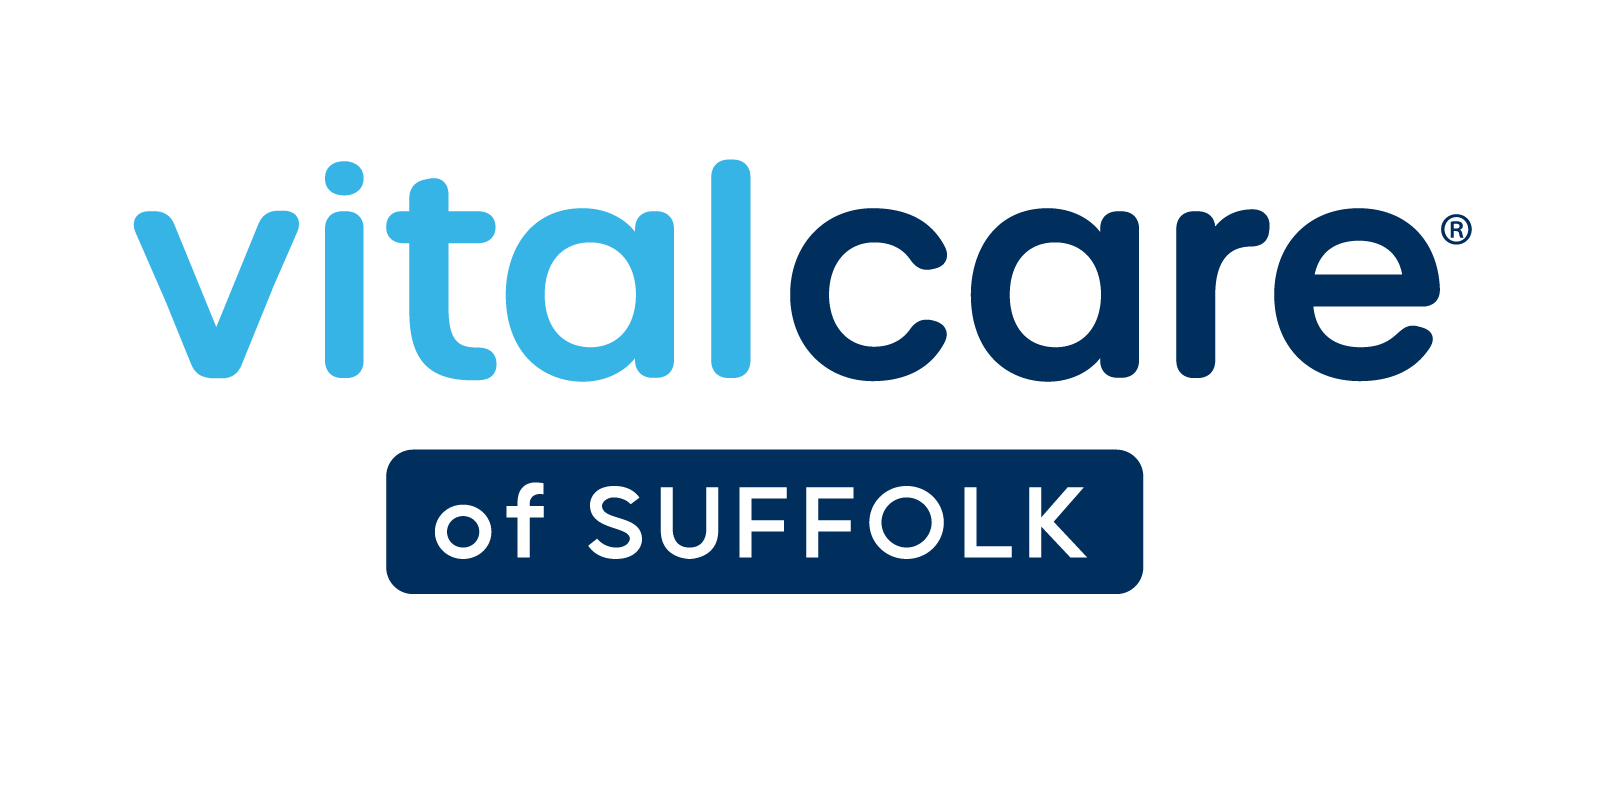 Vital Care of Suffolk VitalCare